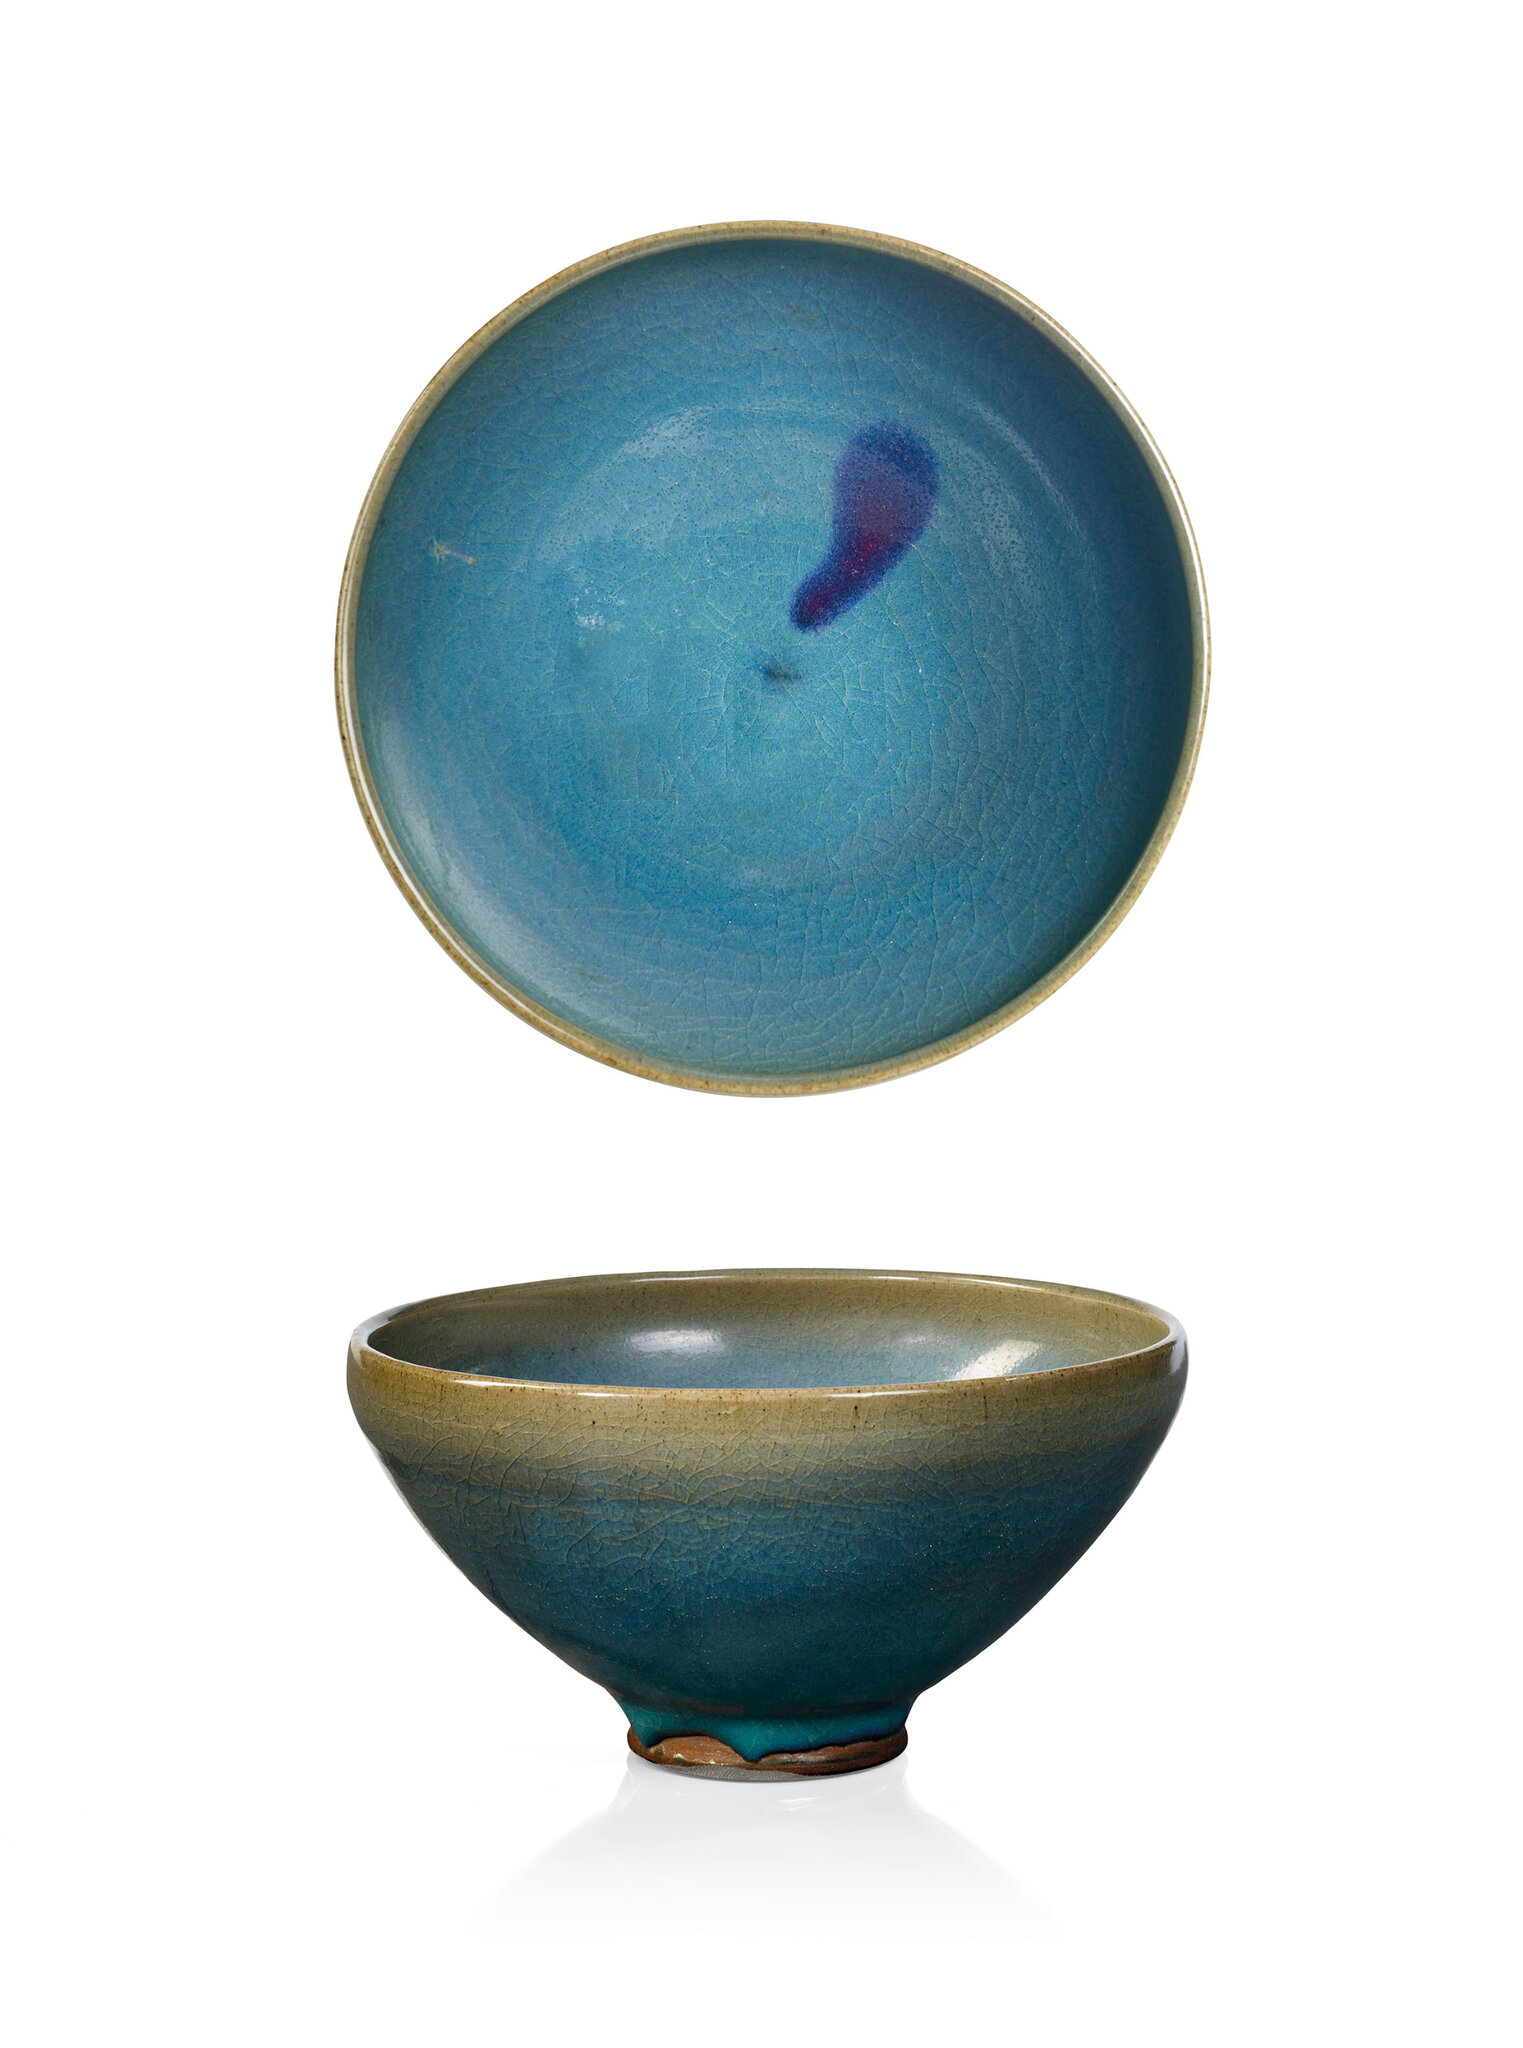 A Junyao pebble bowl, China, Yuan dynasty (1279-1368)